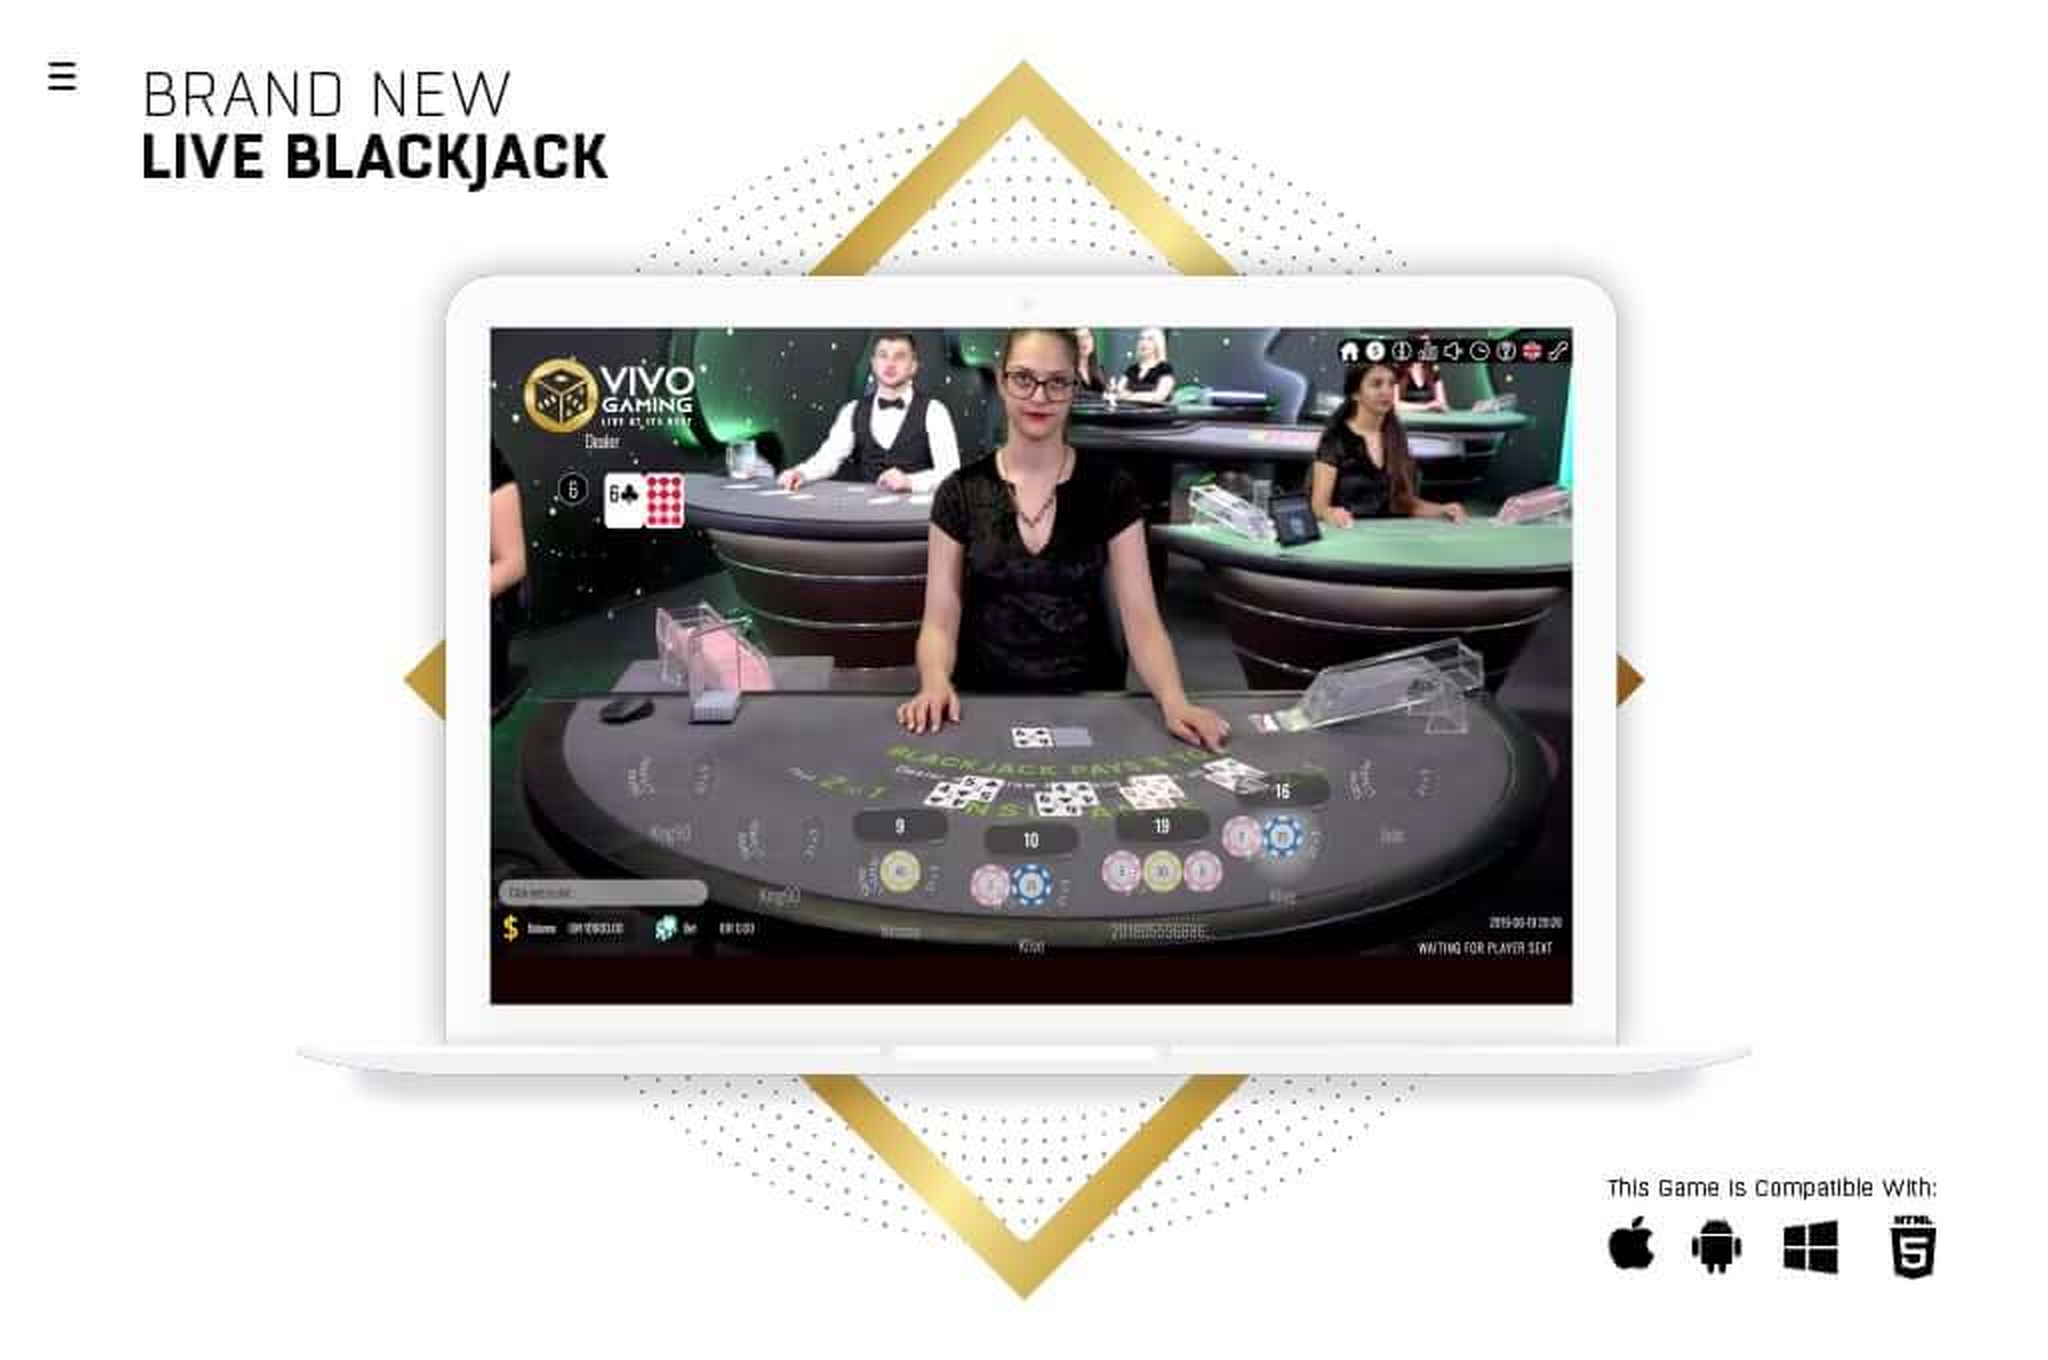 Blackjack Live Casino demo